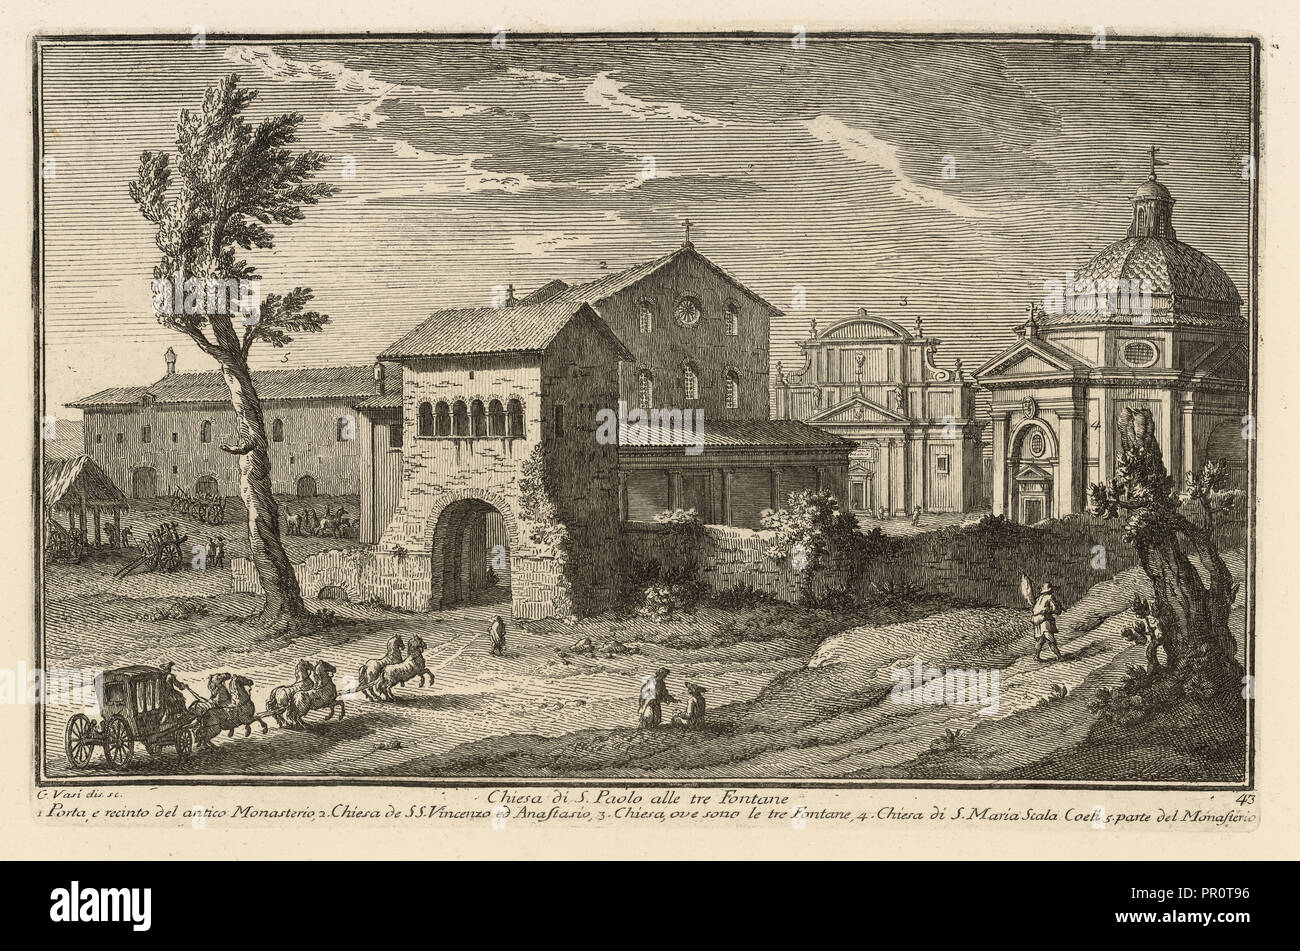 Chiesa di S. Paolo alle tre Fontane, Delle magnificenze di Roma antica e moderna, Vasi, Giuseppe, 1710-1782, Engraving, 1747 Stock Photo